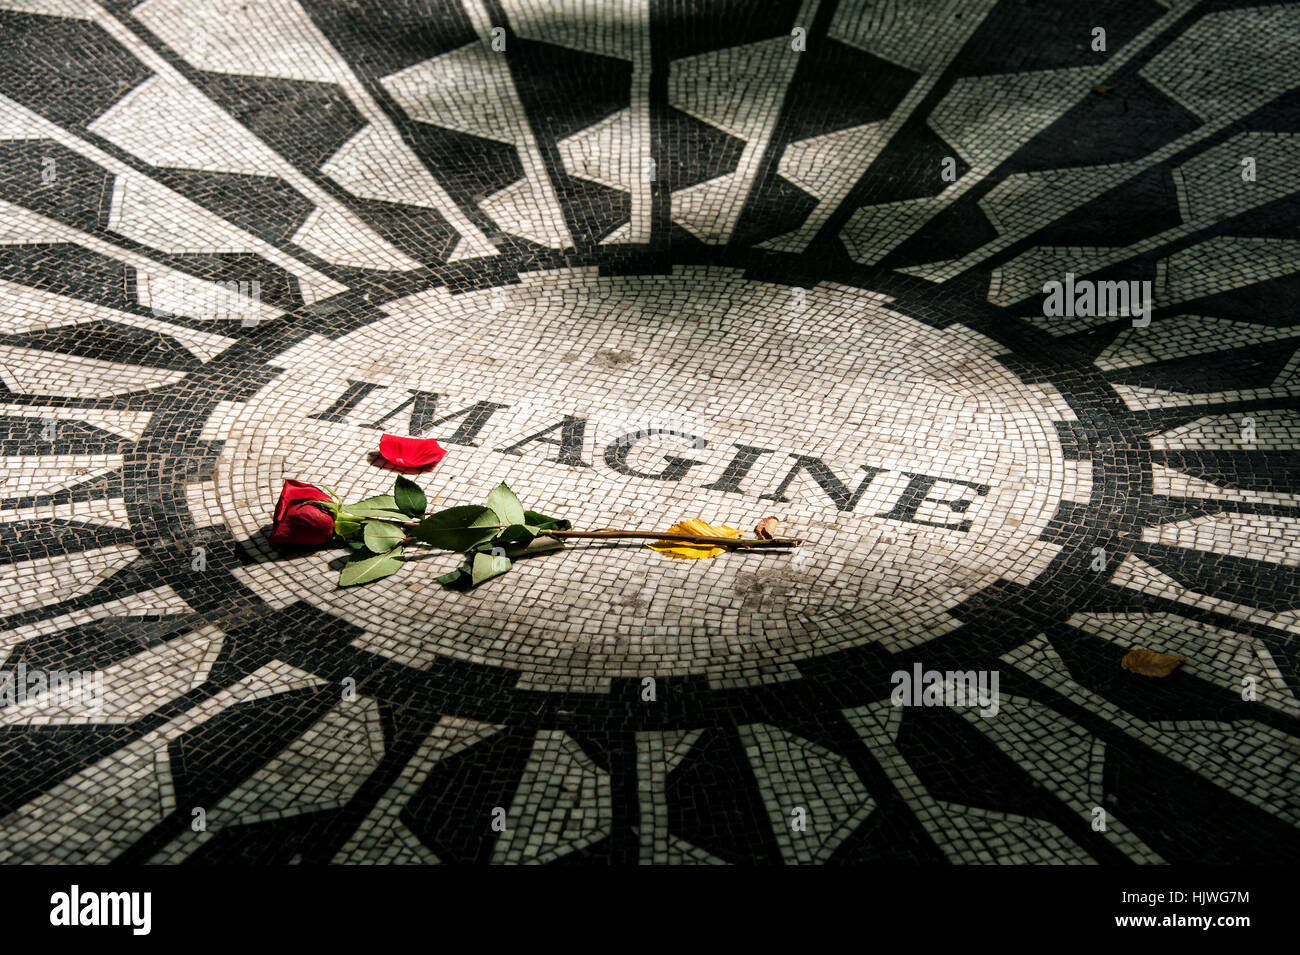 Strawberry Fields Memorial, immaginate di mosaico con Red Rose in memoria di John Lennon, Central Park, Manhattan, New York City, Stati Uniti d'America Foto Stock